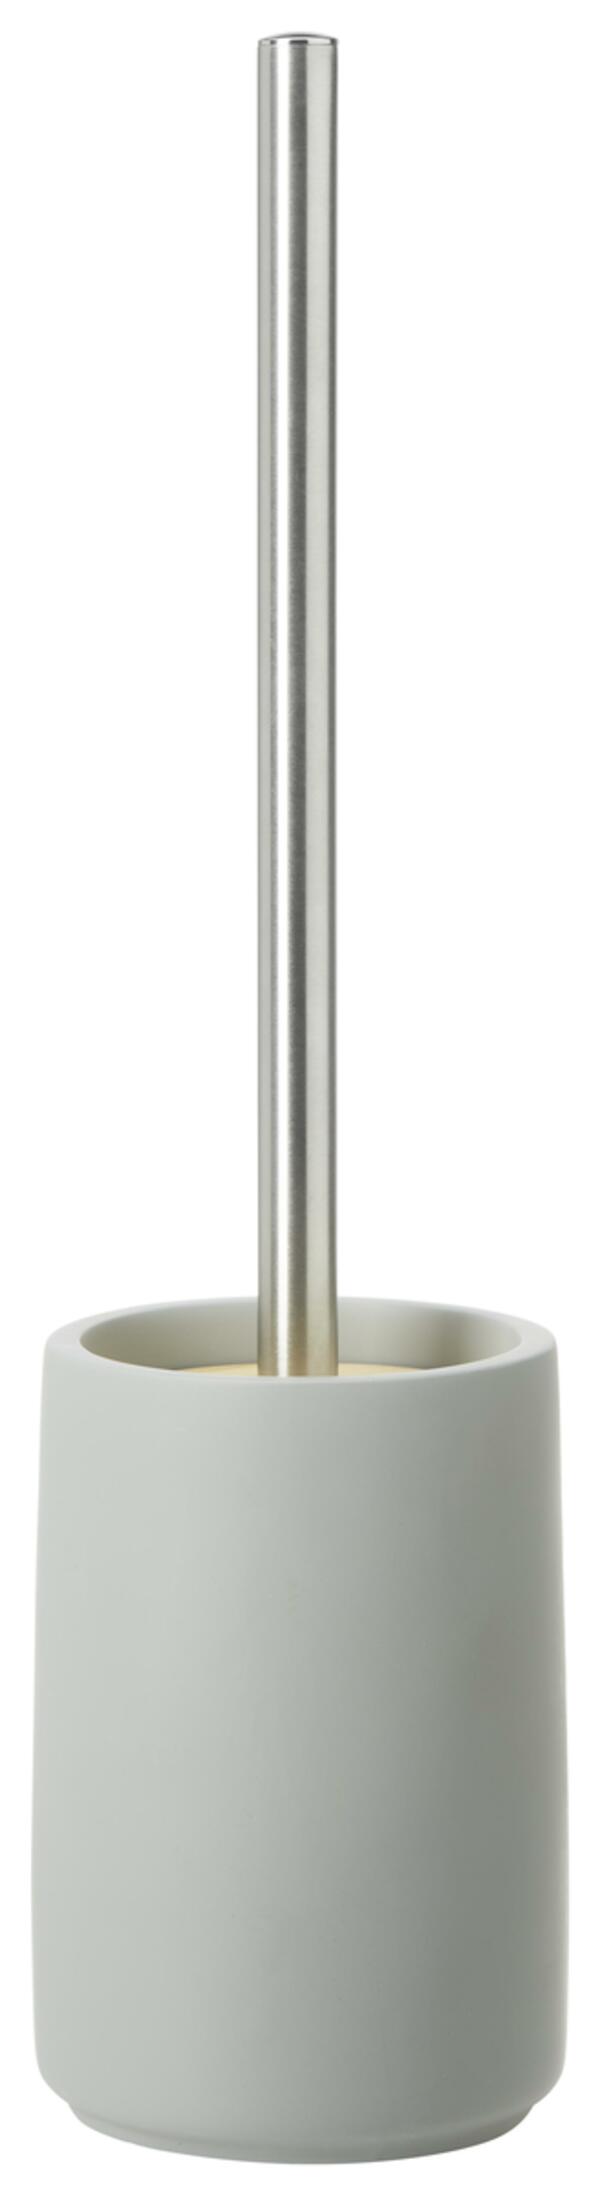 Bild 1 von WC-Bürstengarnitur Kim aus Bambus in Grau